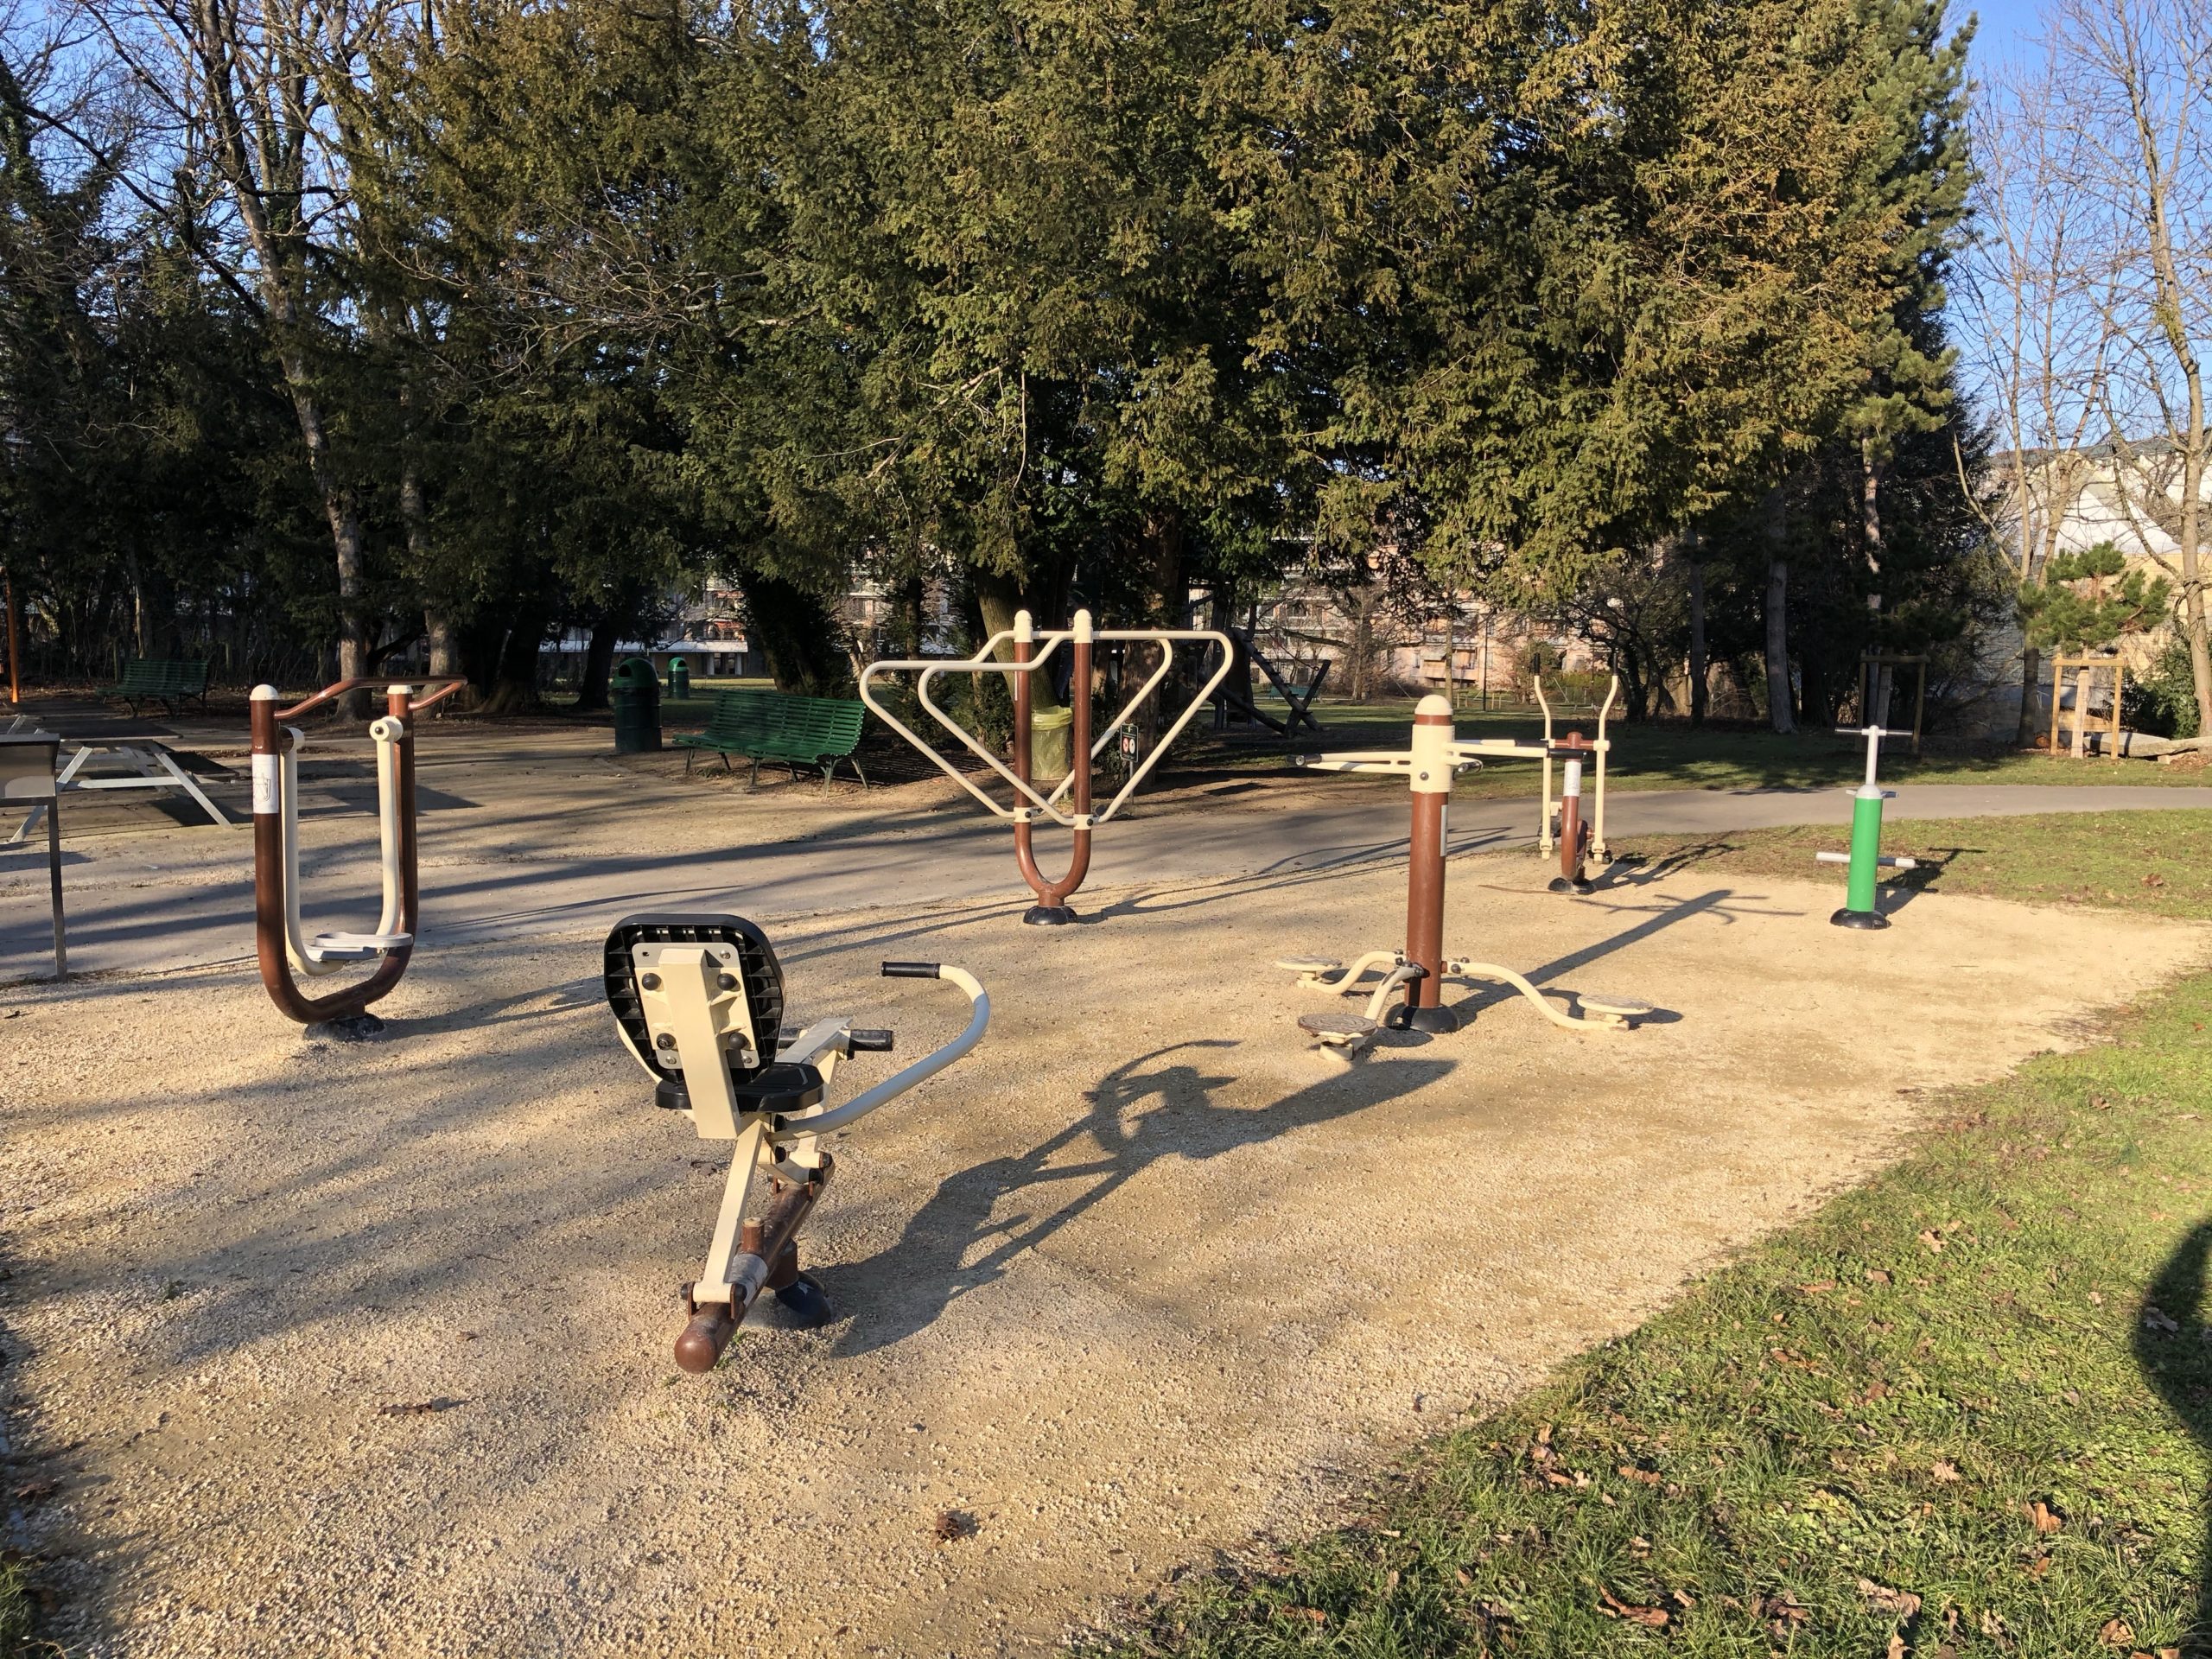 An Adult Playground Near a Children’s Playground